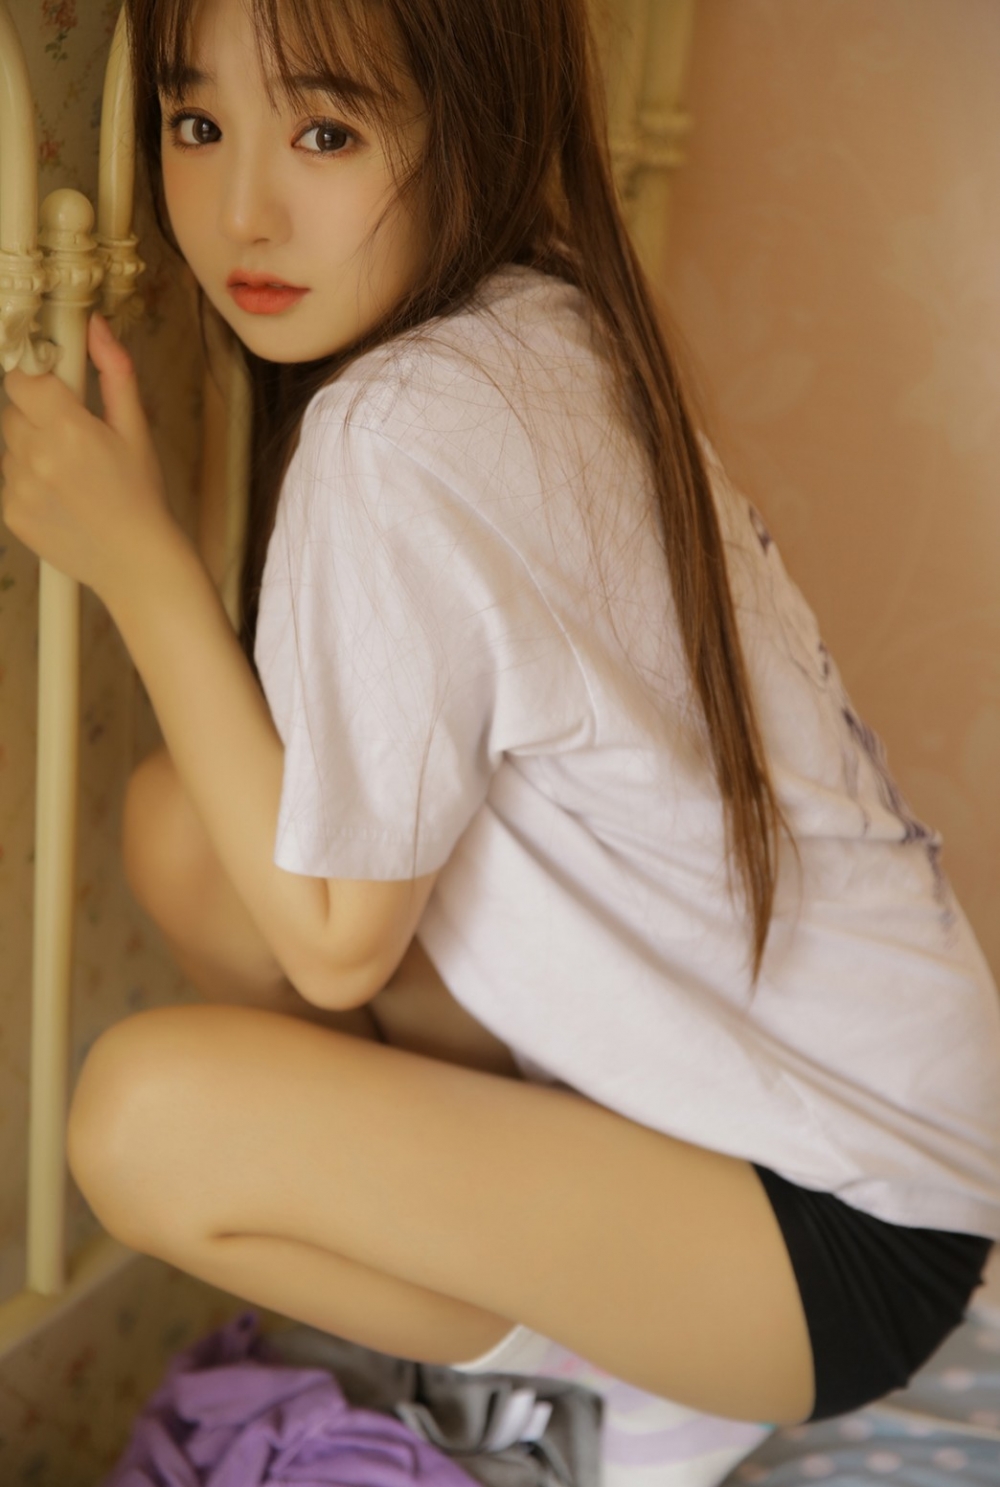 韩国运动美女热裤长腿性感拍照姿势私房写真